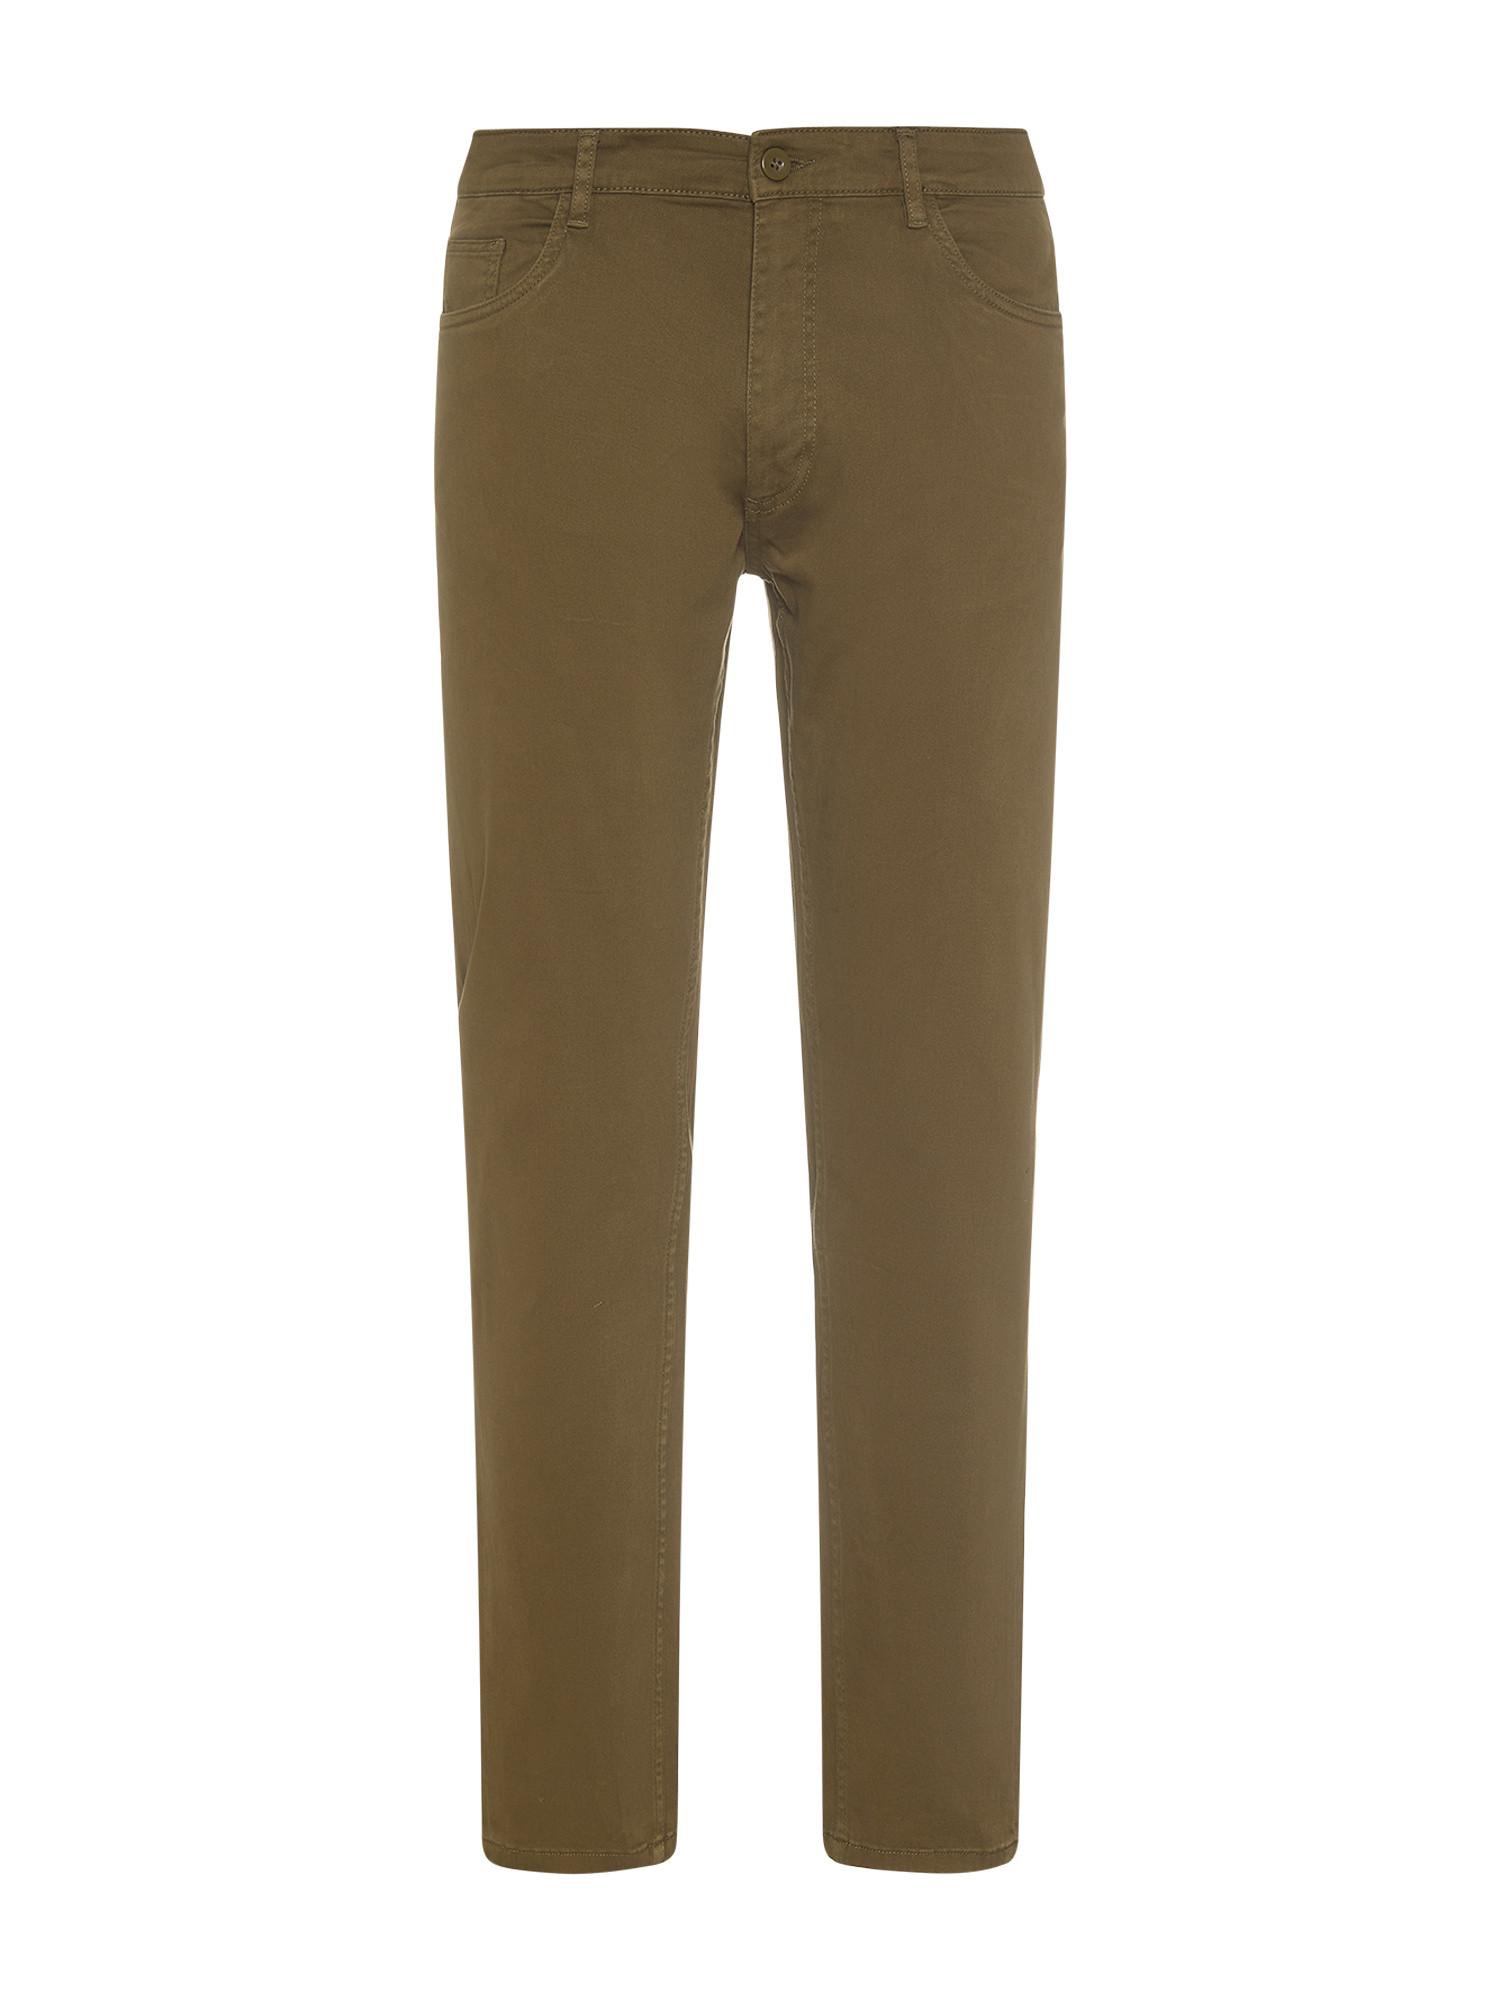 JCT - Pantaloni slim fit cinque tasche, Verde, large image number 0